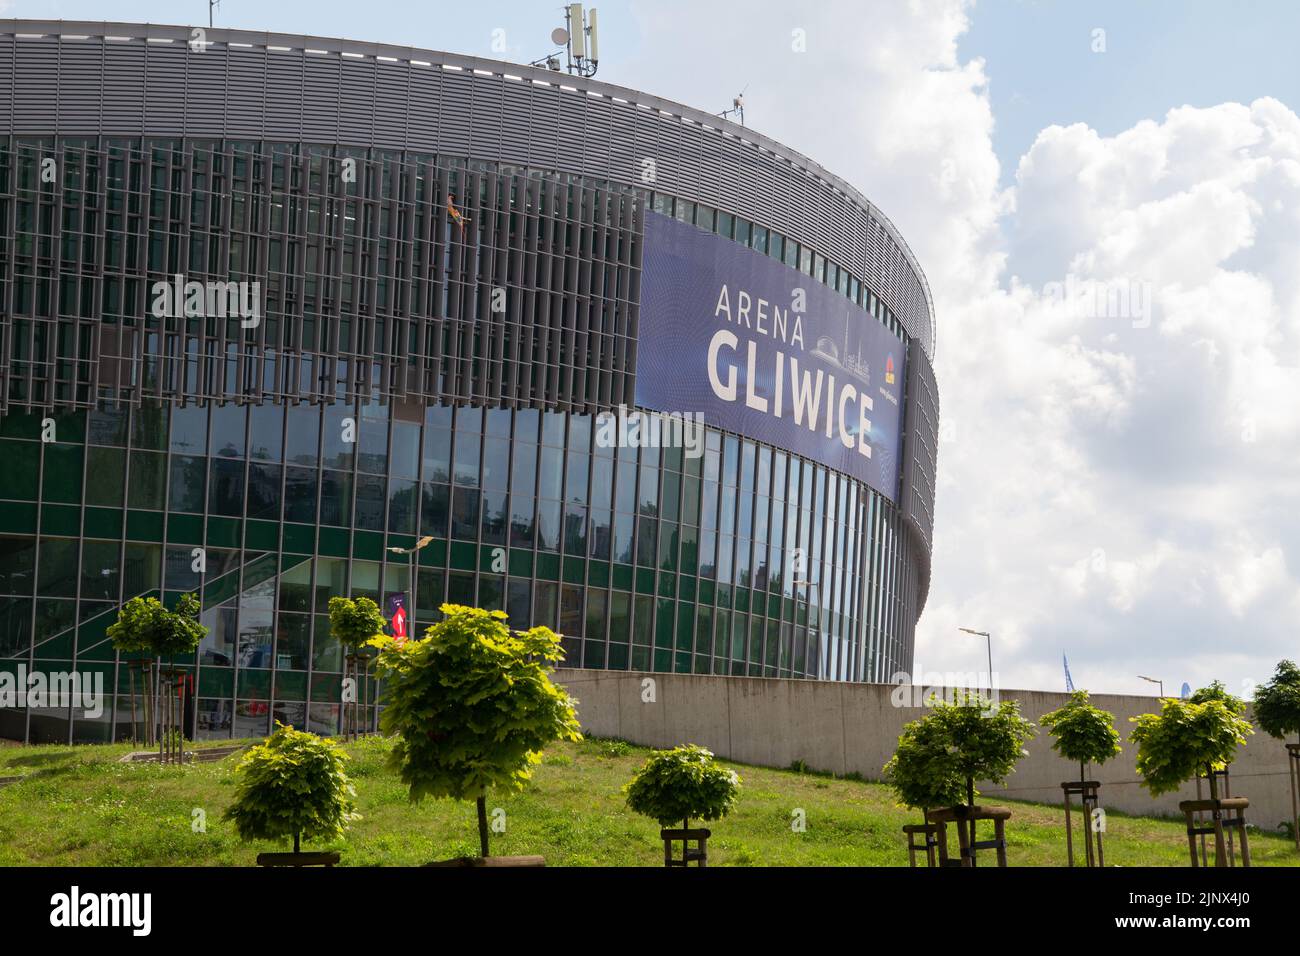 Arena Gliwice, moderne Mehrzweckhalle, Sport- und Unterhaltungshalle in Gliwice, Polen. Stockfoto